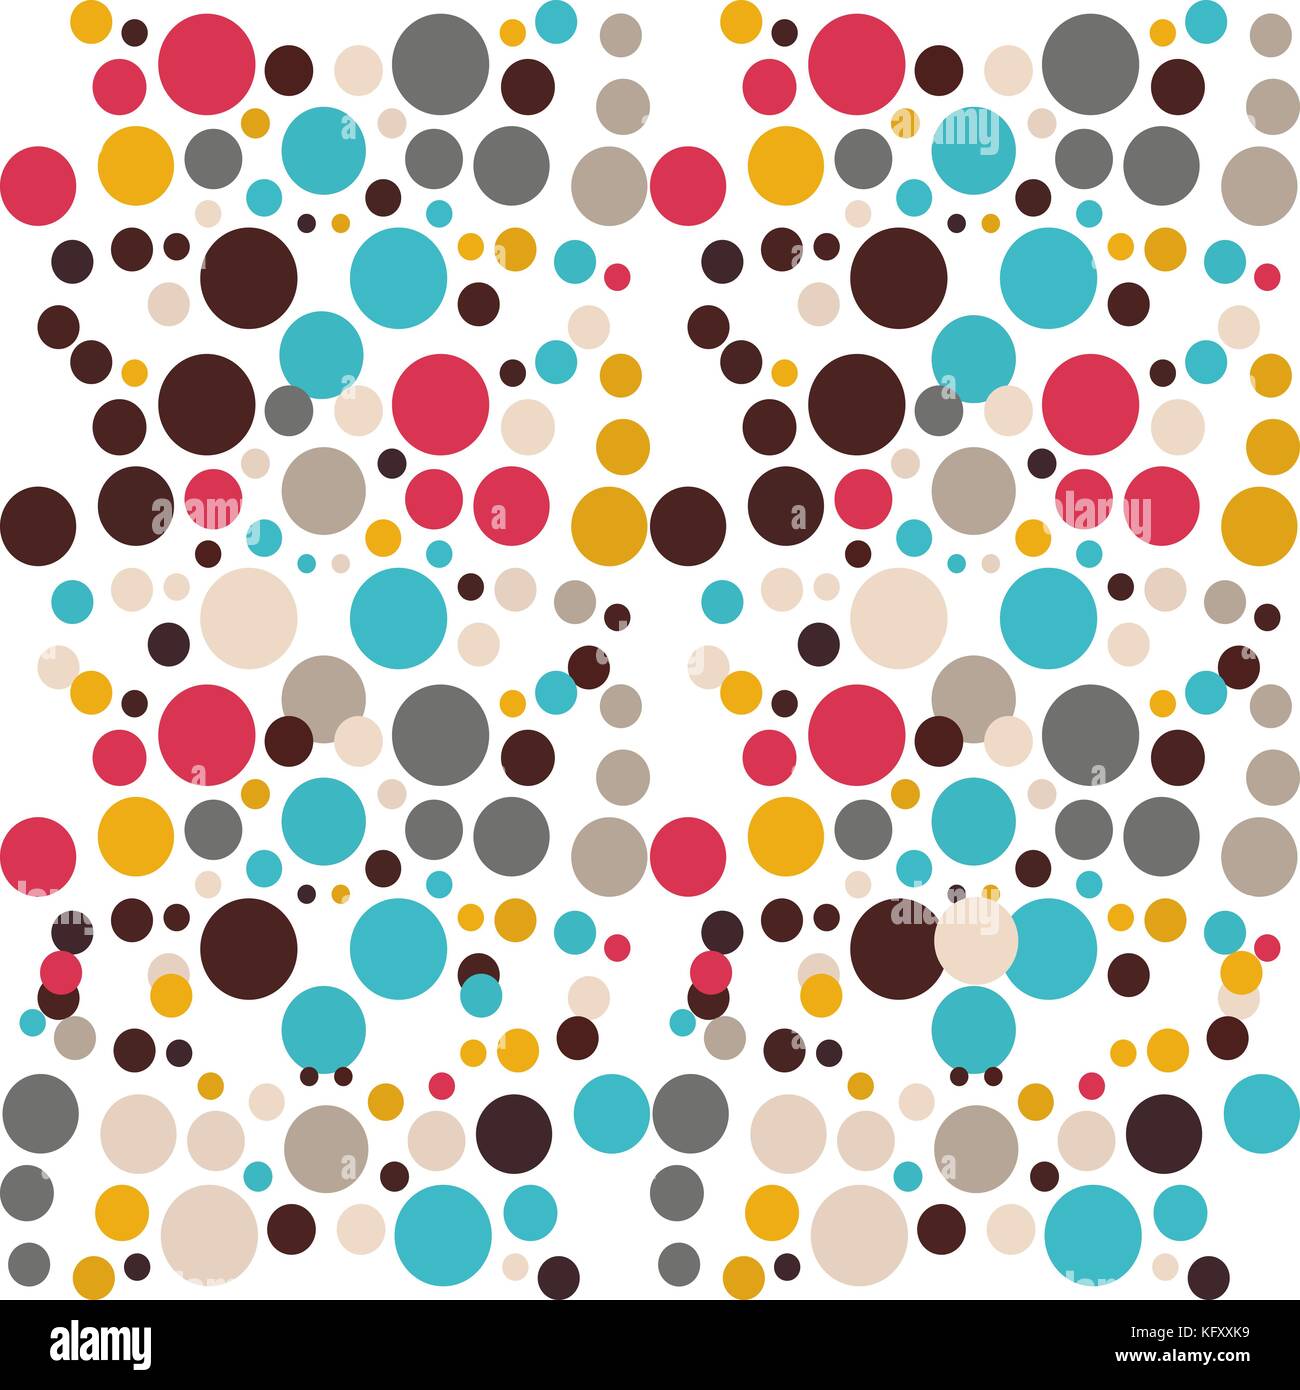 Vektor farbige Muster von Kreisen. Ideal für Gewebe, Geschenkpapier,  Produkte für Kinder Stock-Vektorgrafik - Alamy